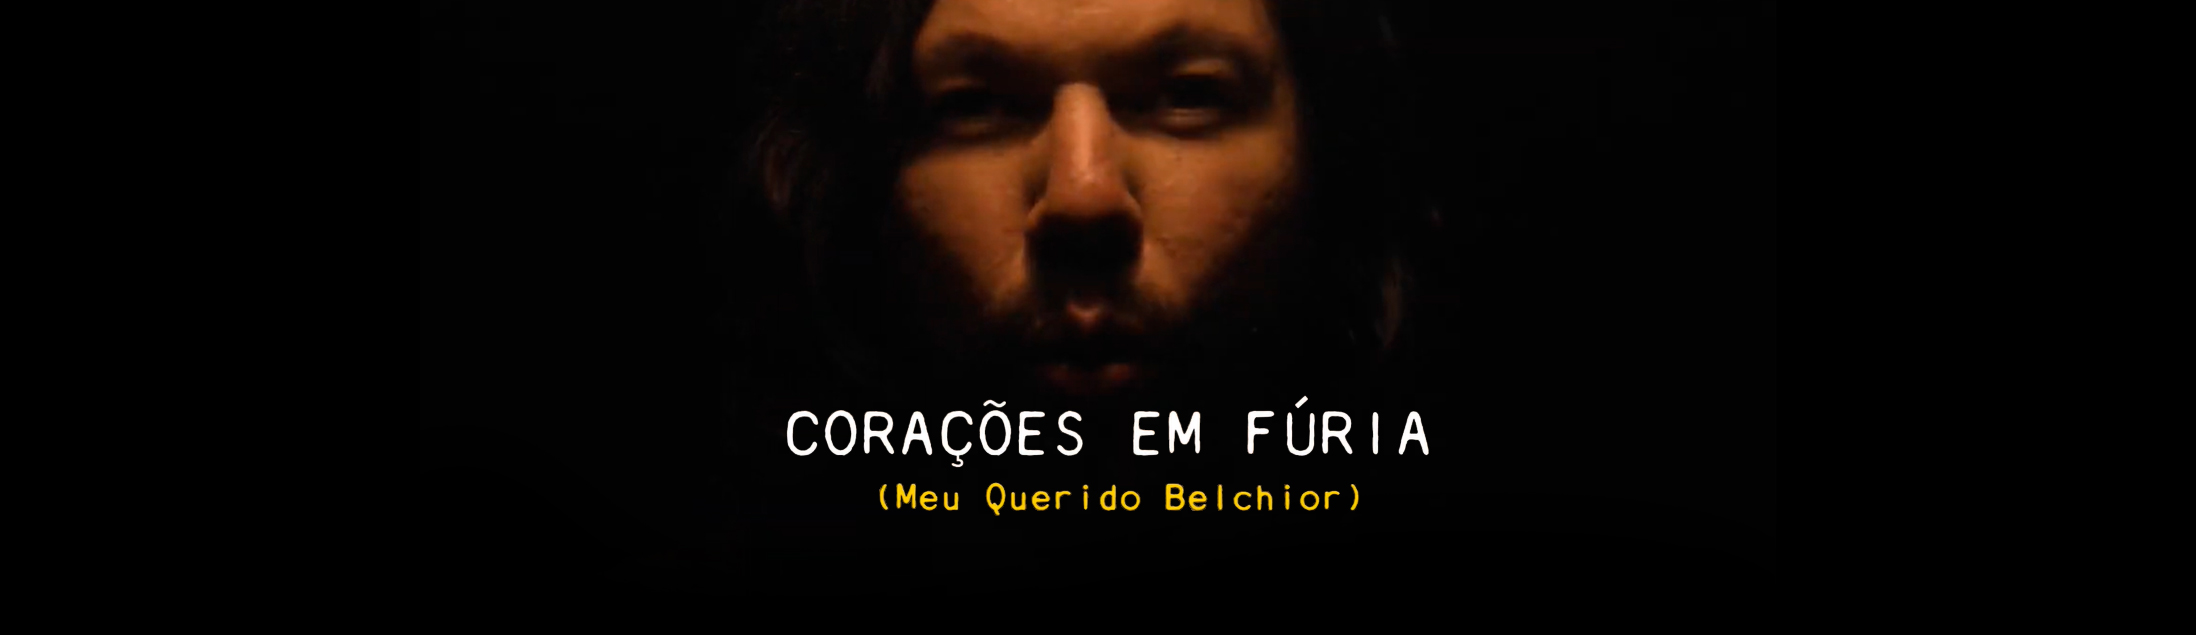 Natura Musical apresenta 'Corações em Fúria (Meu amigo Belchior)', novo single de Teago Oliveira